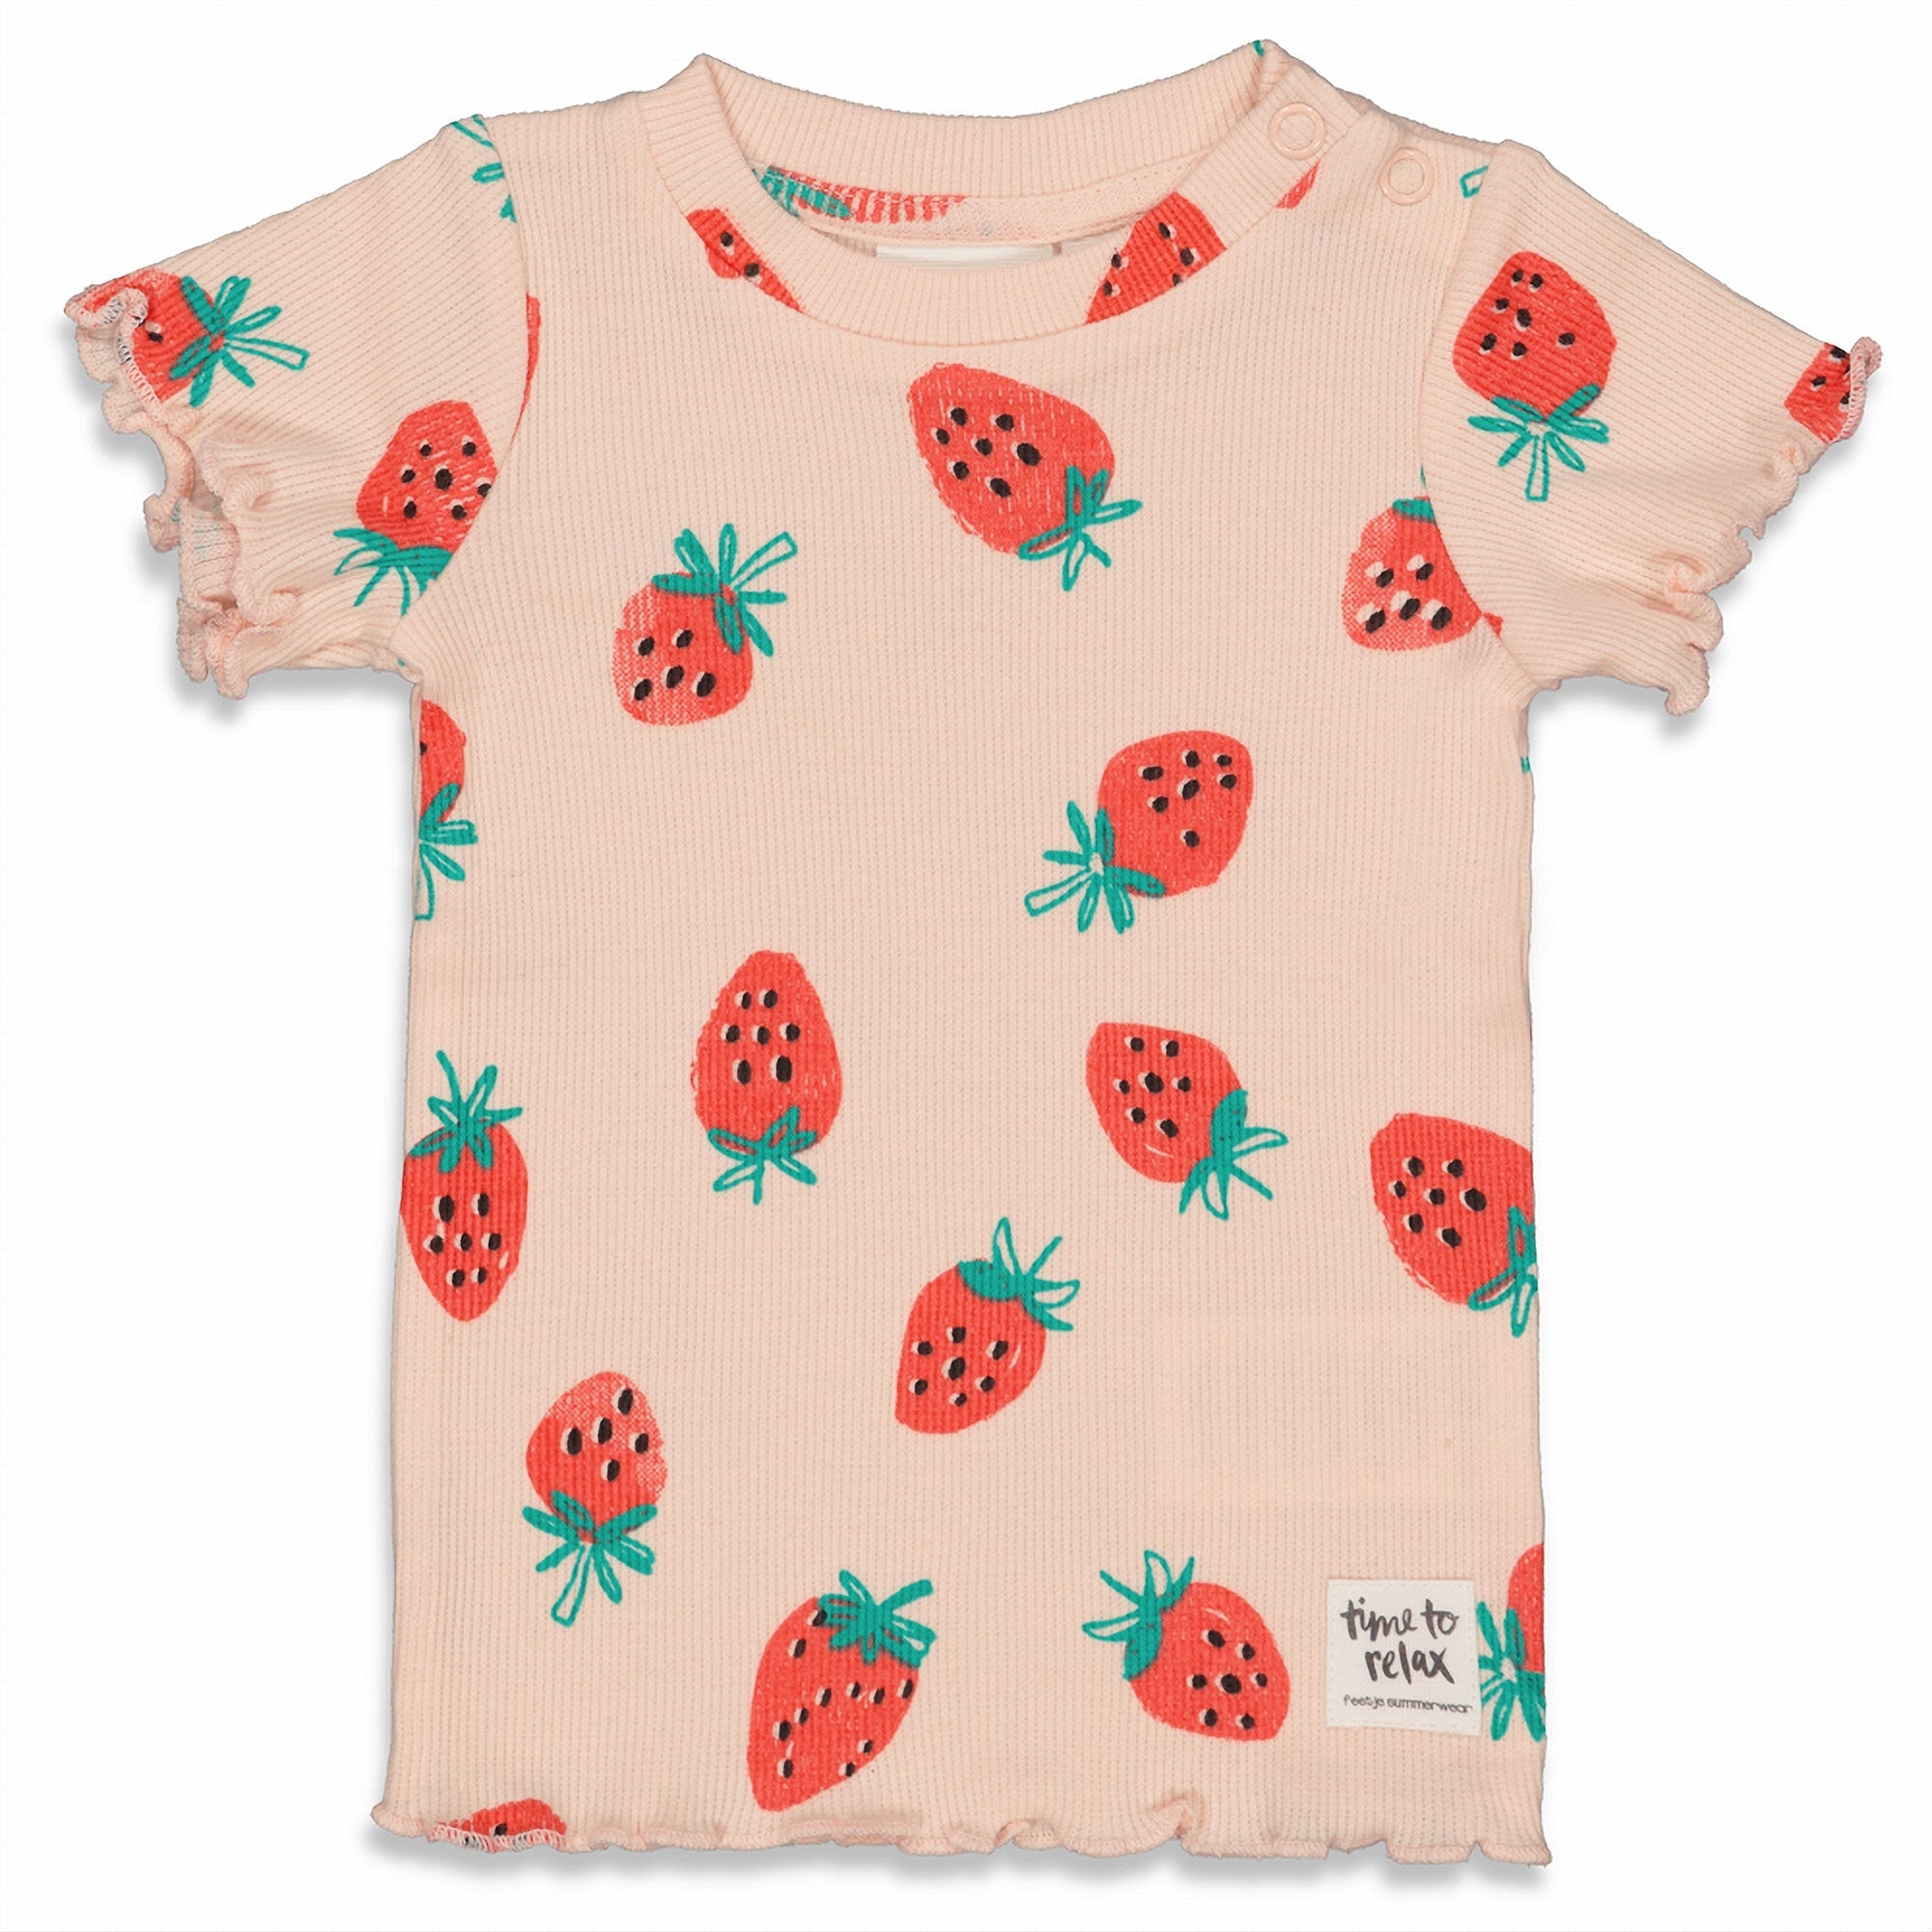 Meisjes Suzy Strawberry - Premium Summerwear by FEETJE van Feetje in de kleur Roze in maat 152.